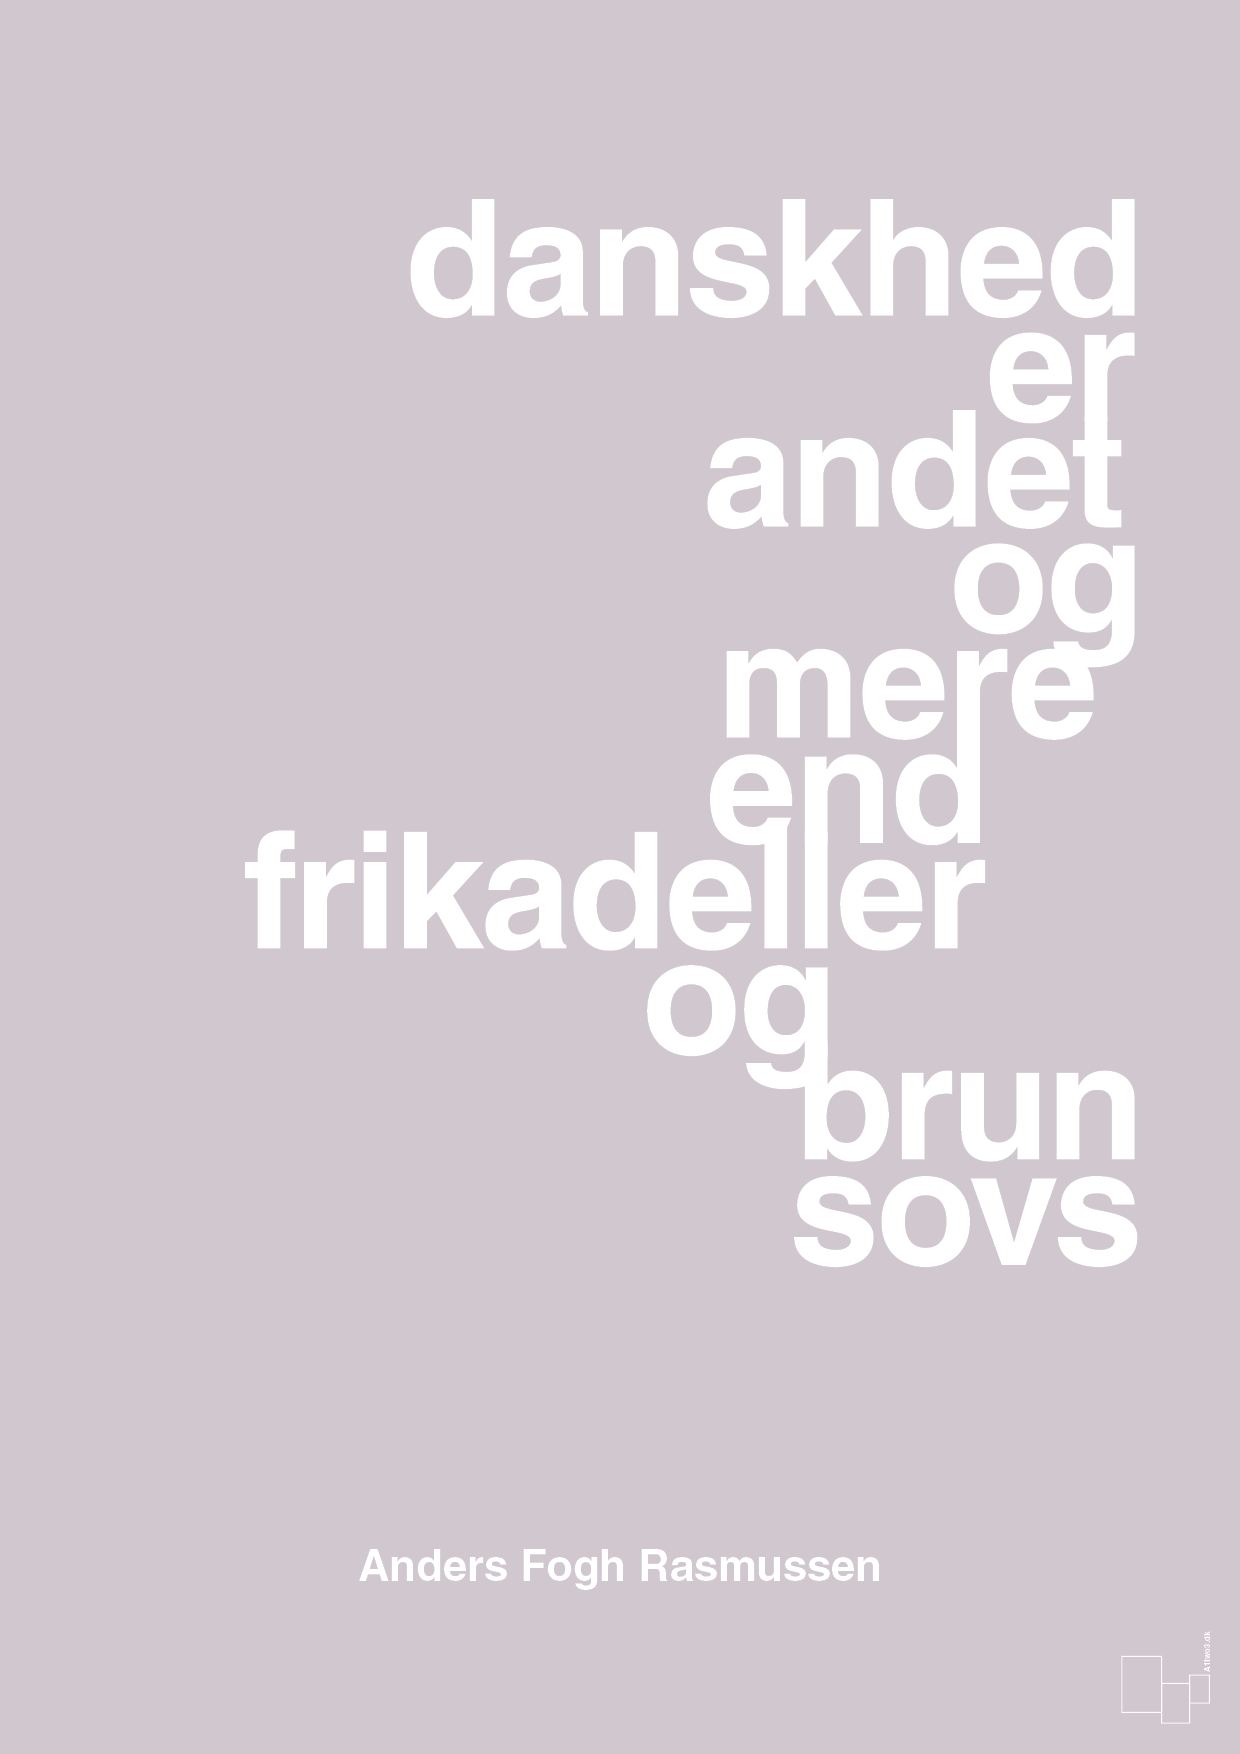 danskhed er andet og mere end frikadeller og brun sovs - Plakat med Citater i Dusty Lilac